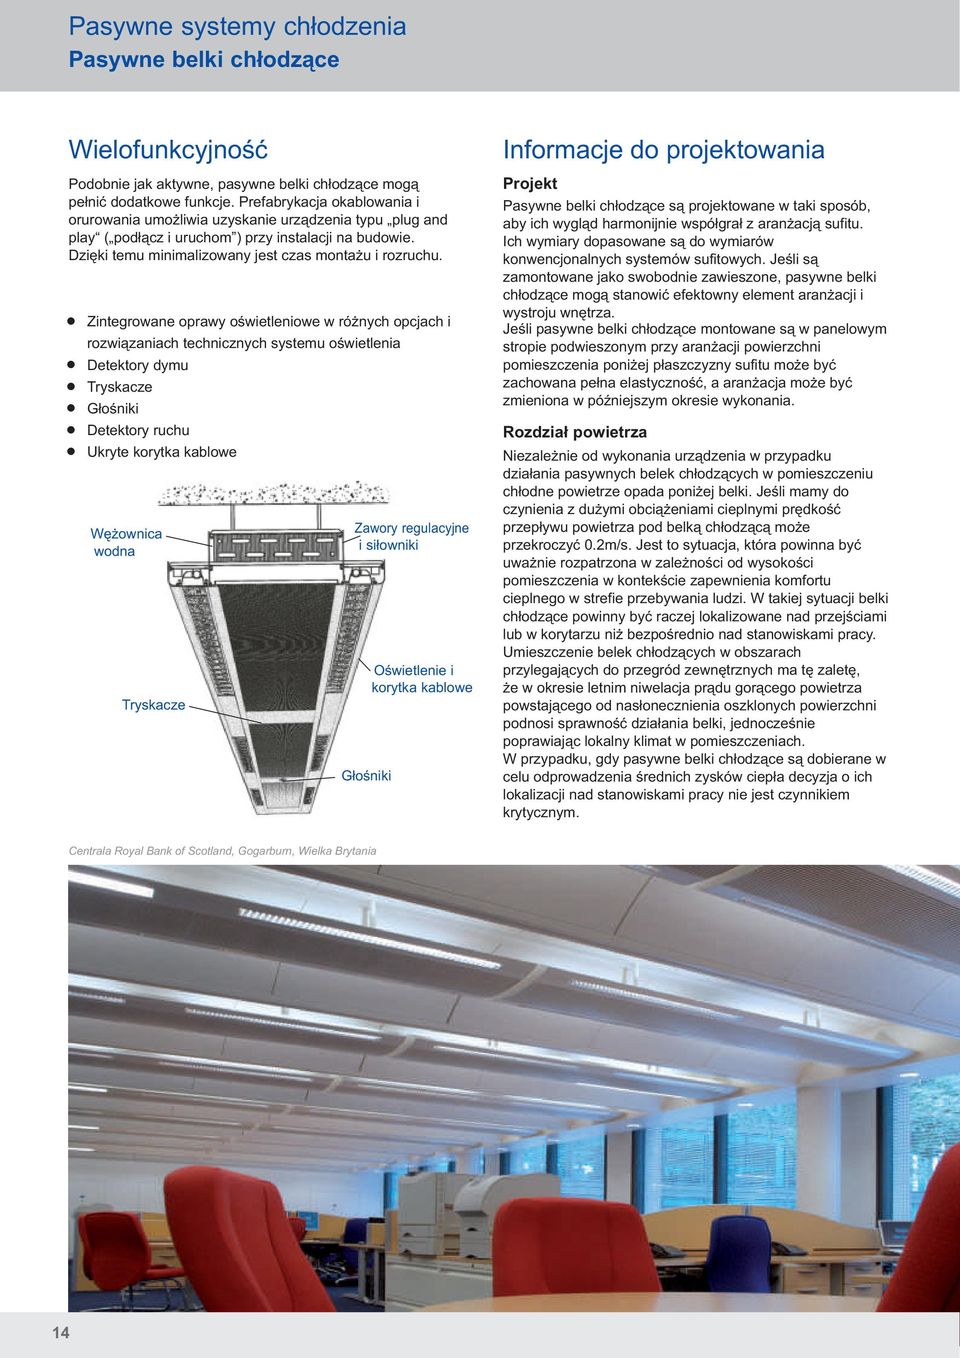 Zintegrowane oprawy oświetleniowe w różnych opcjach i rozwiązaniach technicznych systemu oświetlenia Detektory dymu Tryskacze Głośniki Detektory ruchu Ukryte korytka kablowe Wężownica wodna Tryskacze